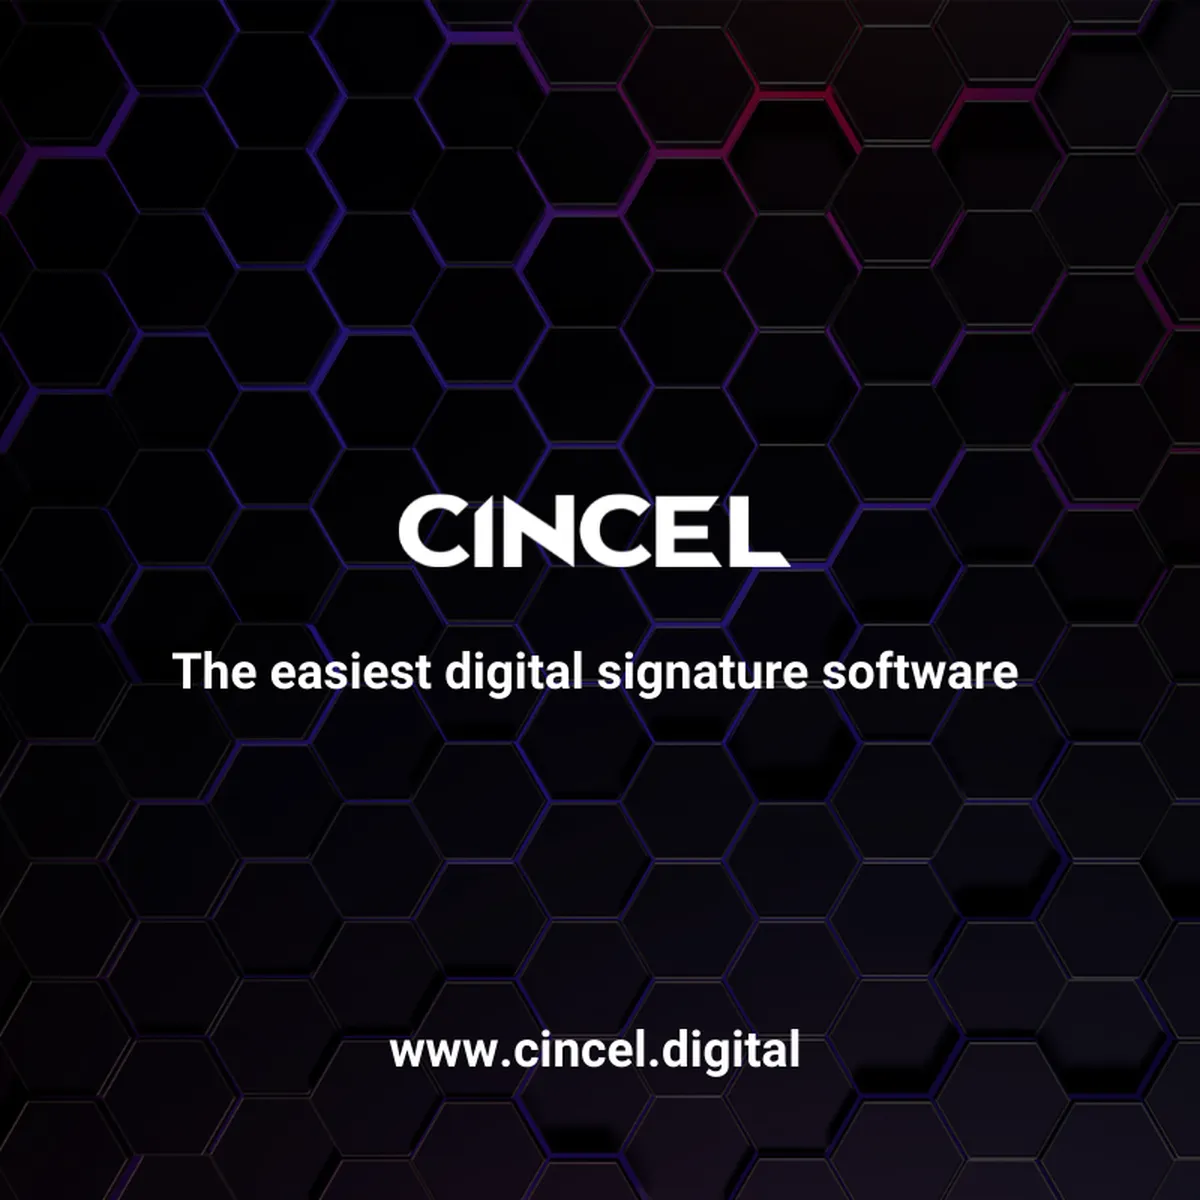 CINCEL Review